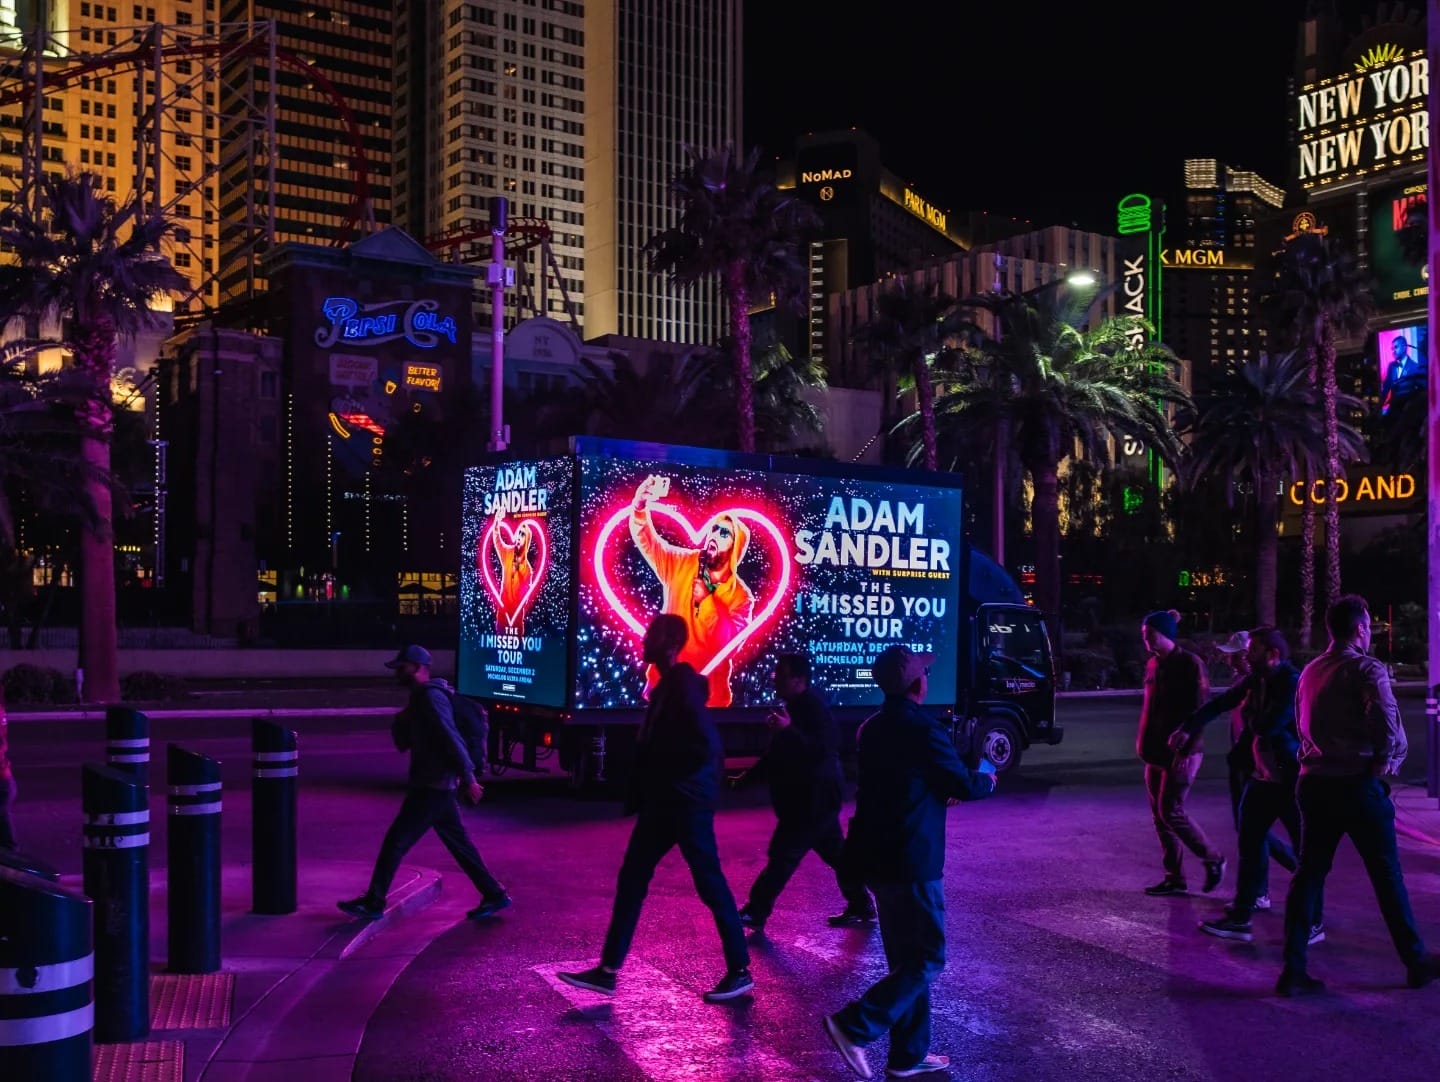 Pedestrians near Las Vegas Adam Sandler tour advertisement.